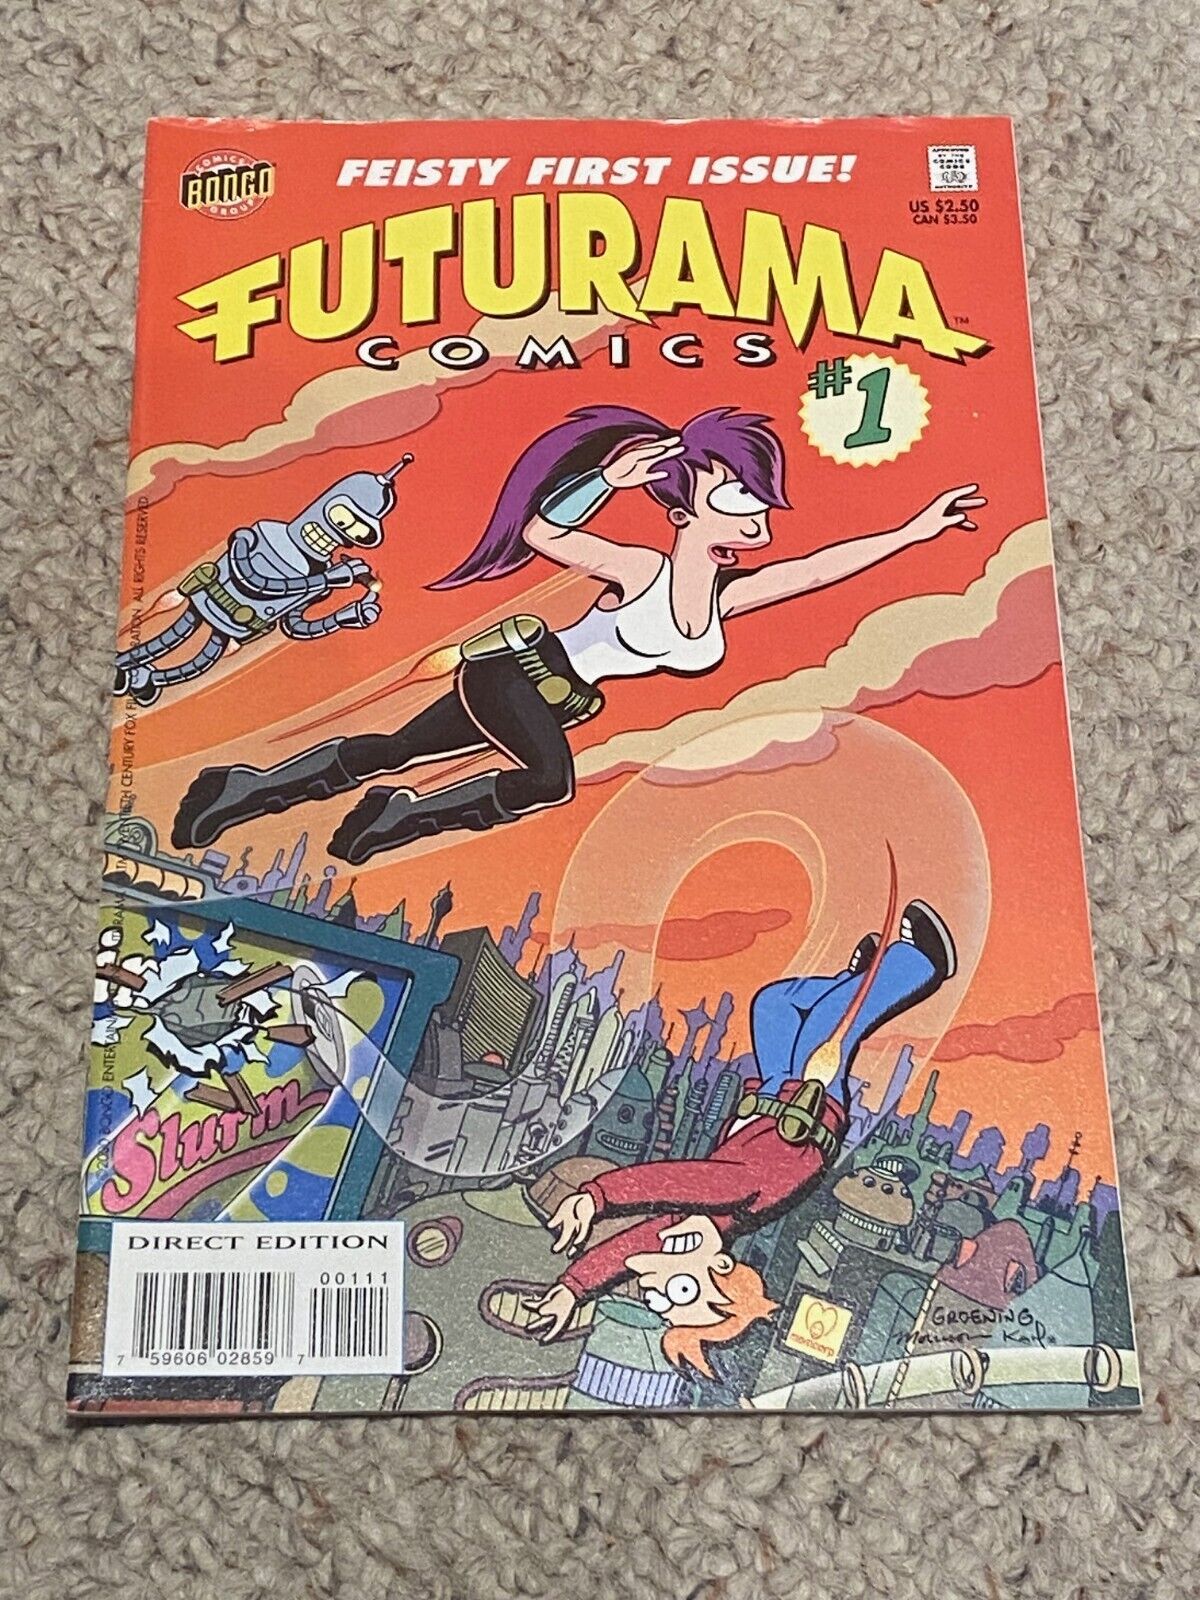 FUTURAMA COMICS ISSUE #1 VERY FINE+